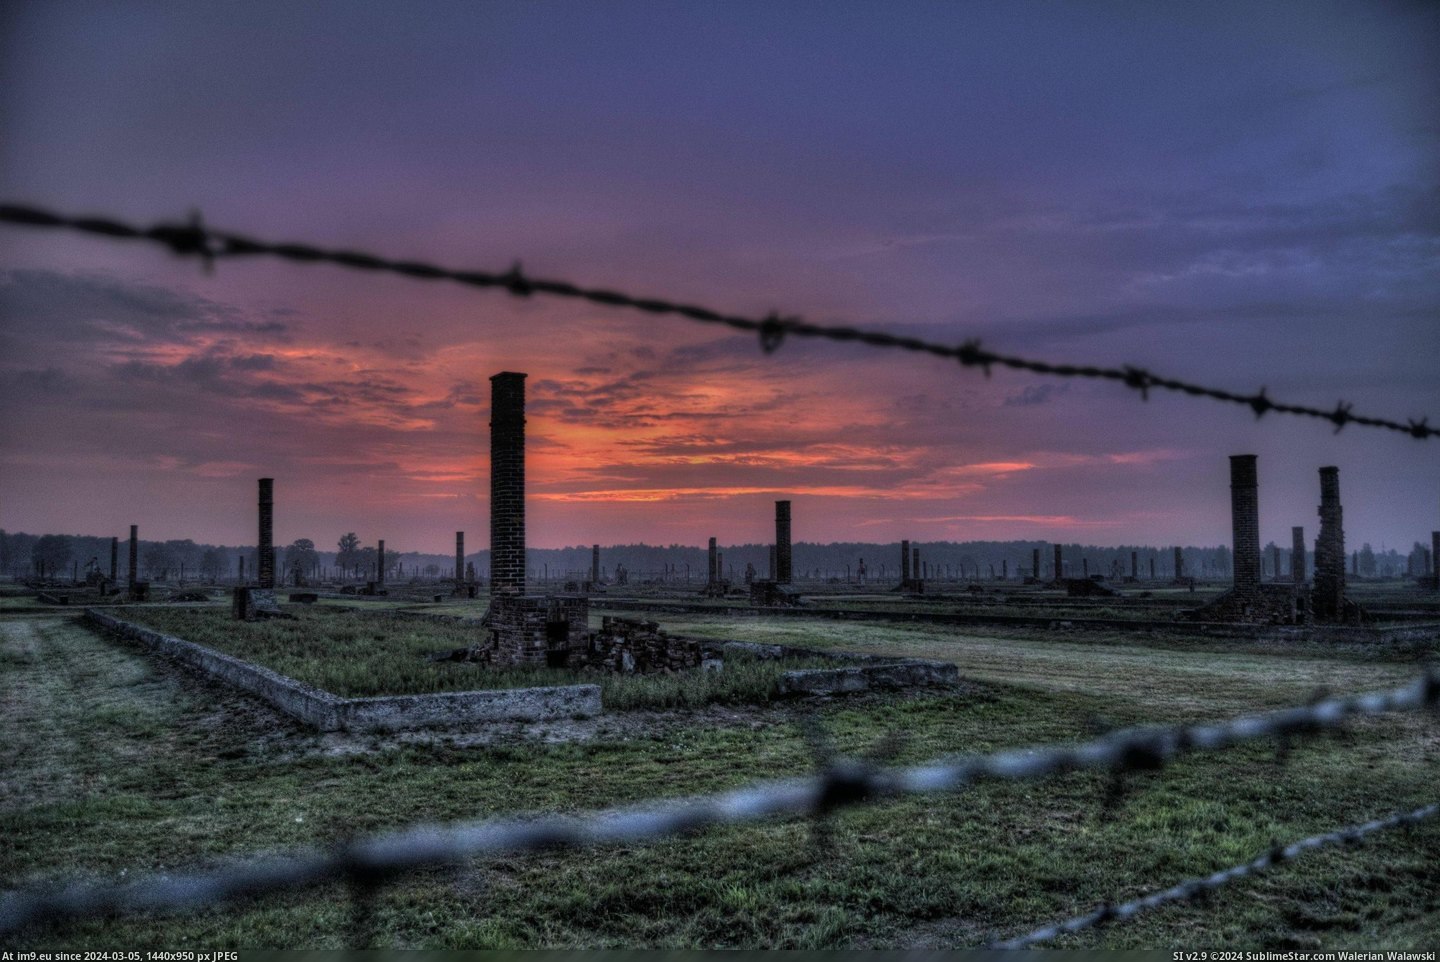  #Auschwitz  [Pics] Auschwitz. Pic. (Obraz z album My r/PICS favs))